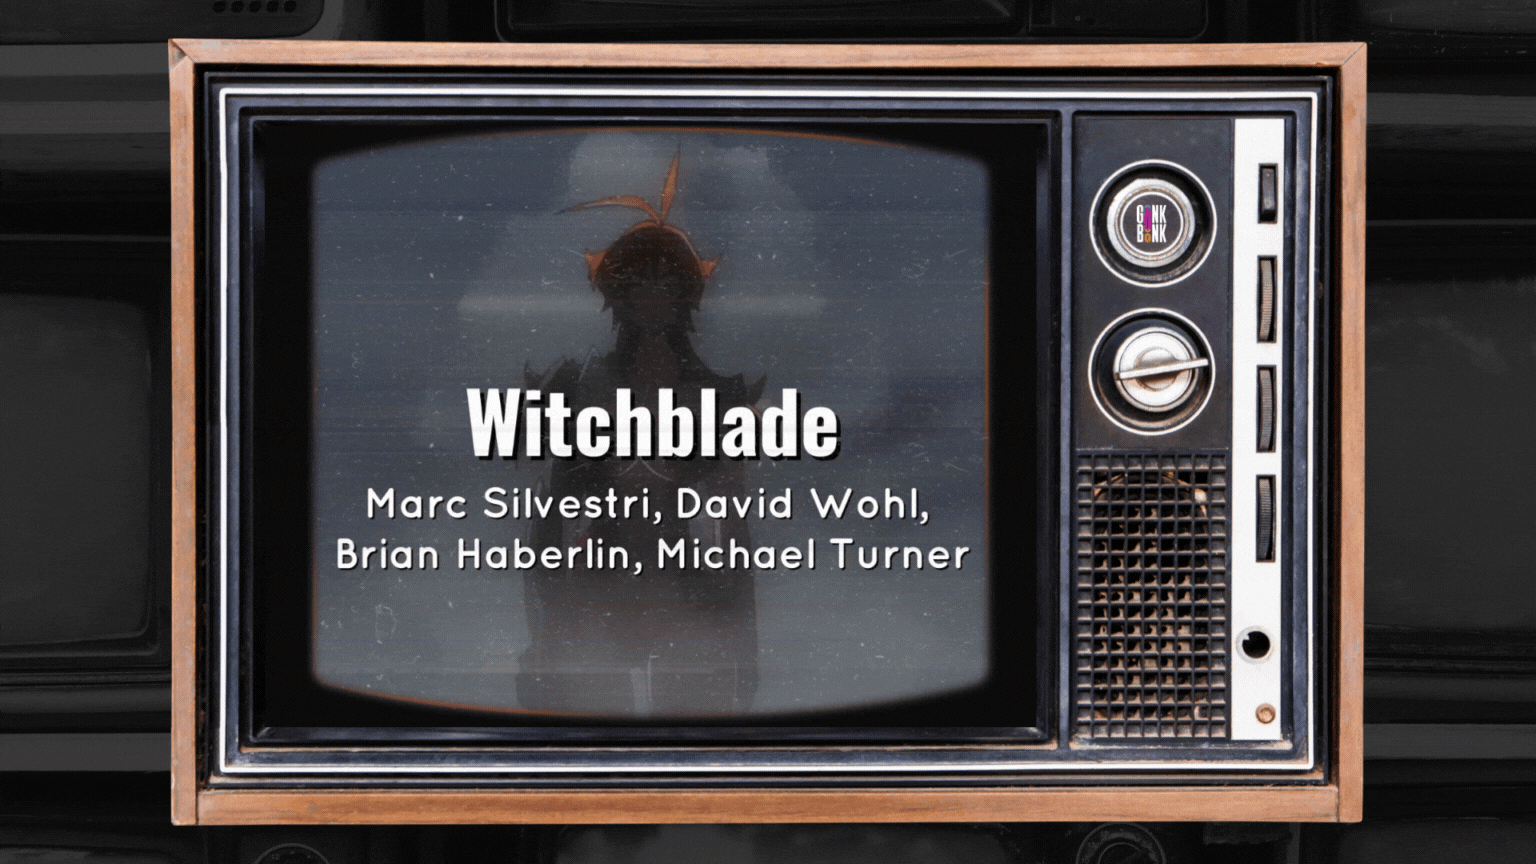 Witchblade TV Show and Comics